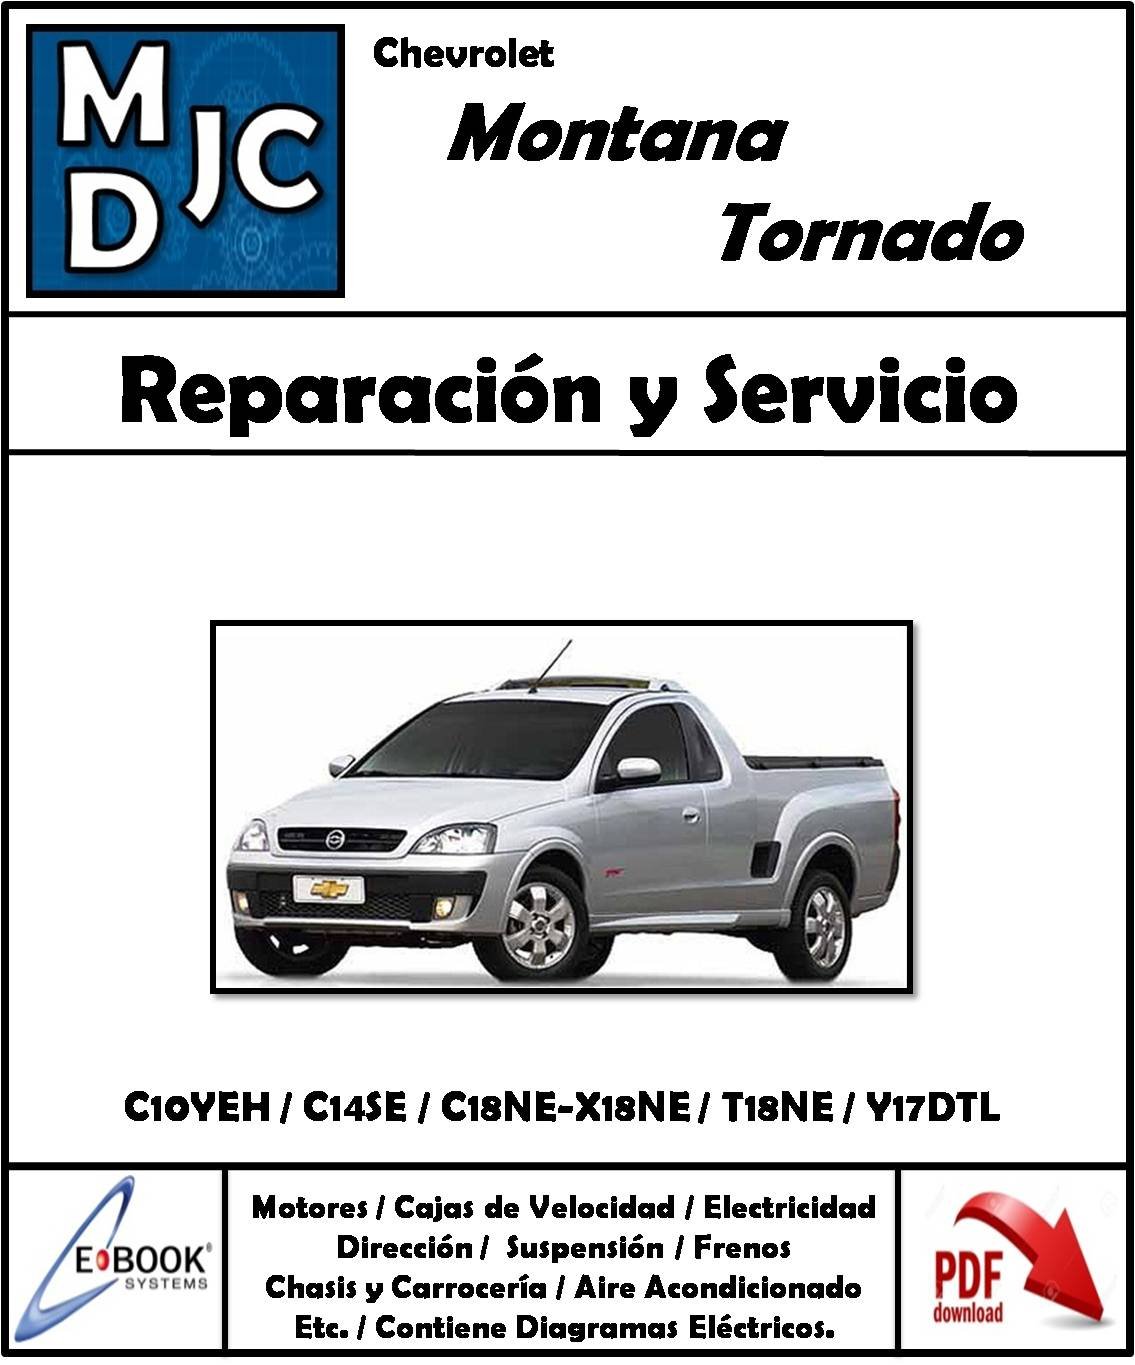 Chevrolet Montana / Tornado 2003 - 2010